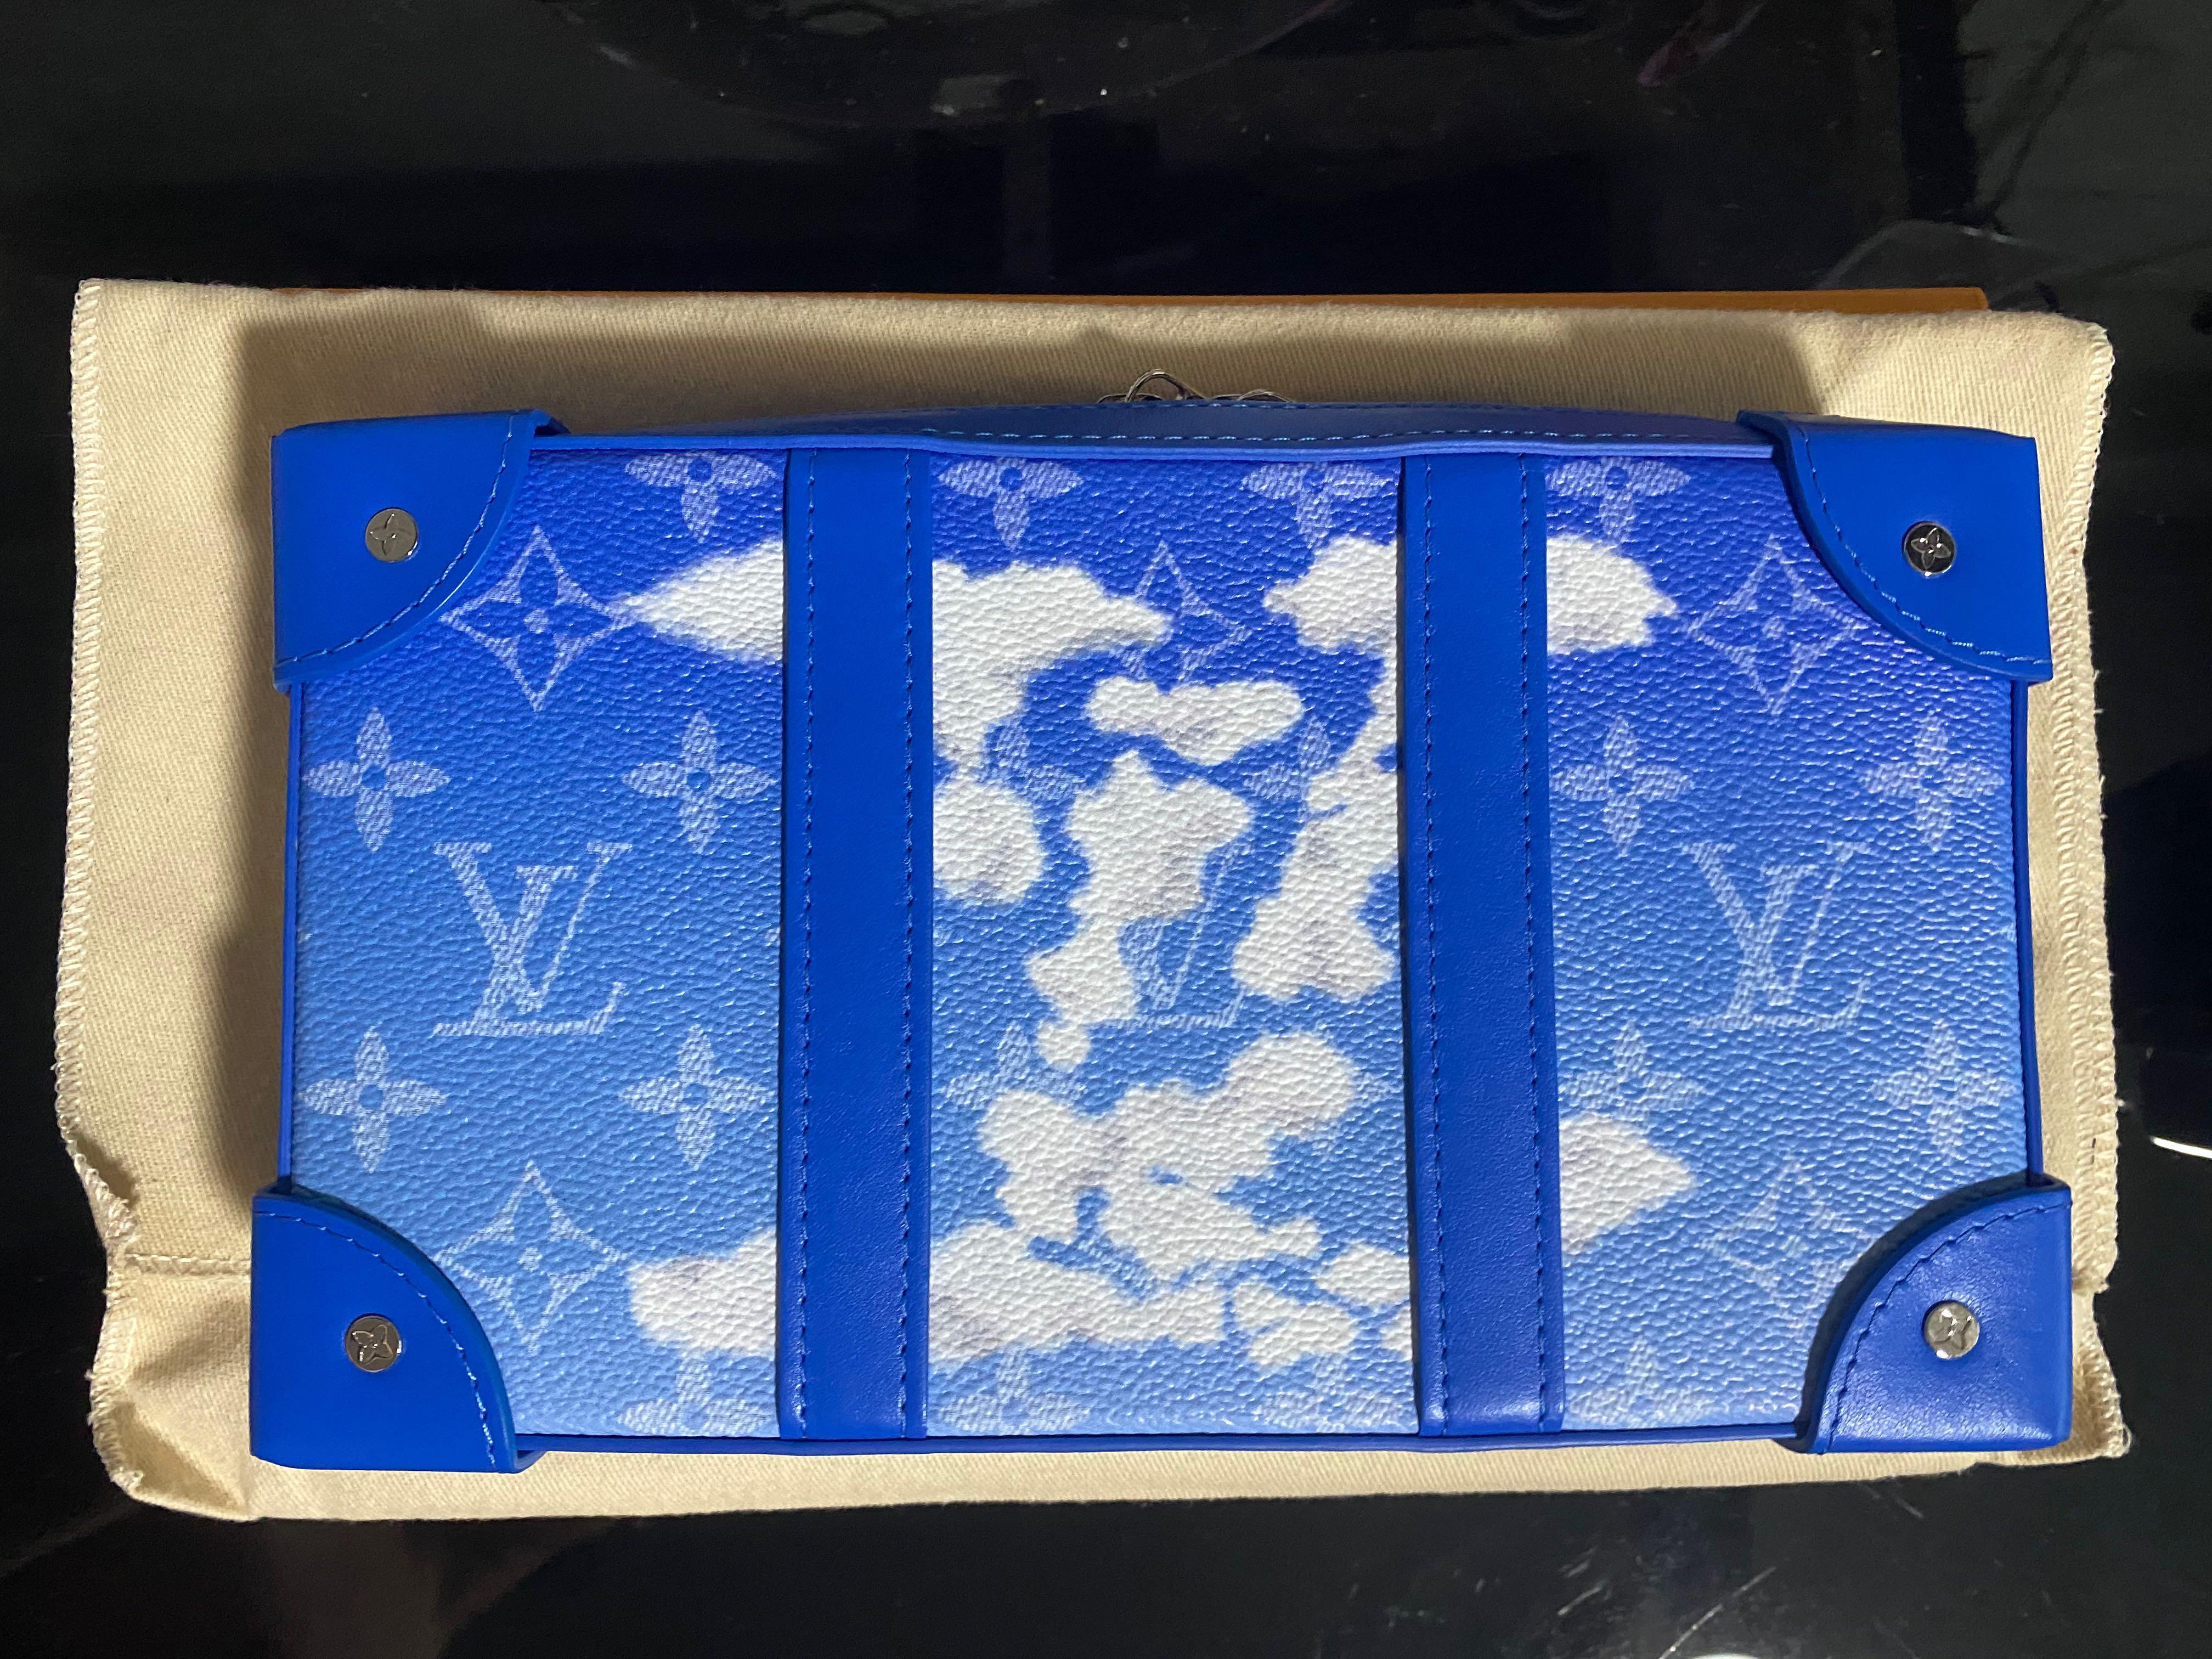 Louis Vuitton Monogram Clouds Soft Trunk Wallet 601359